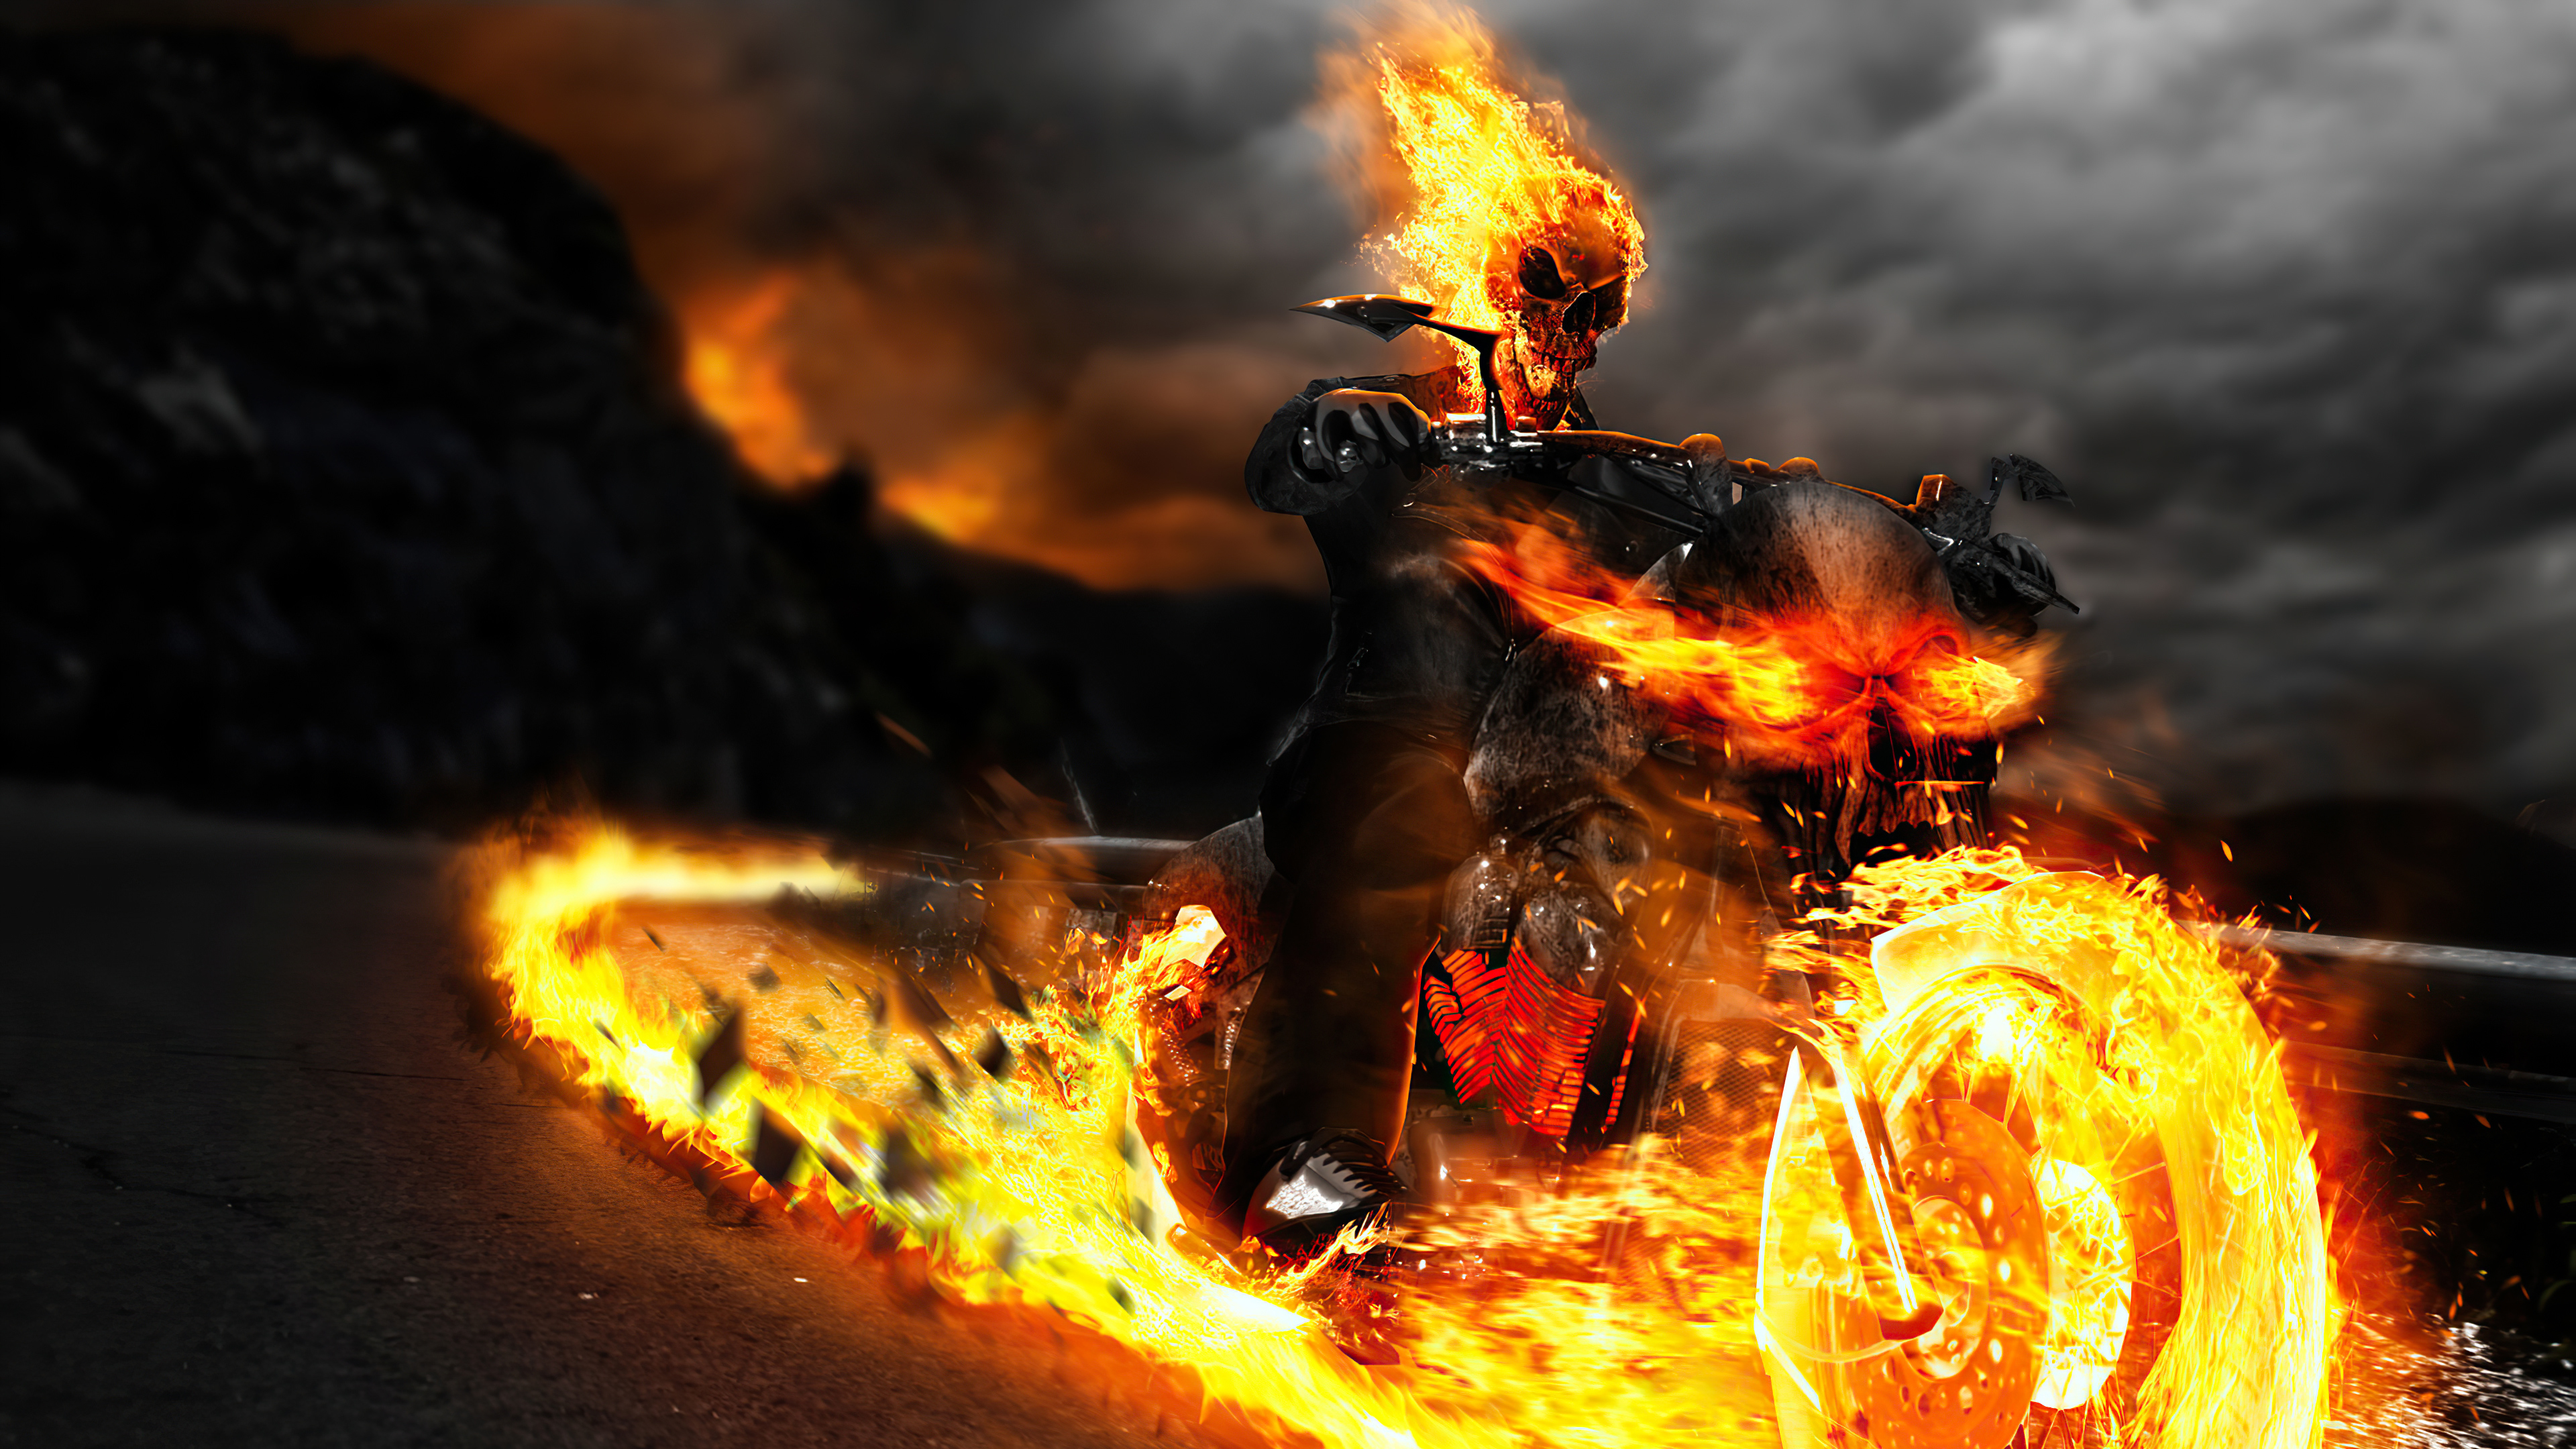 Ghost Rider Wallpaper 4k For Mobile